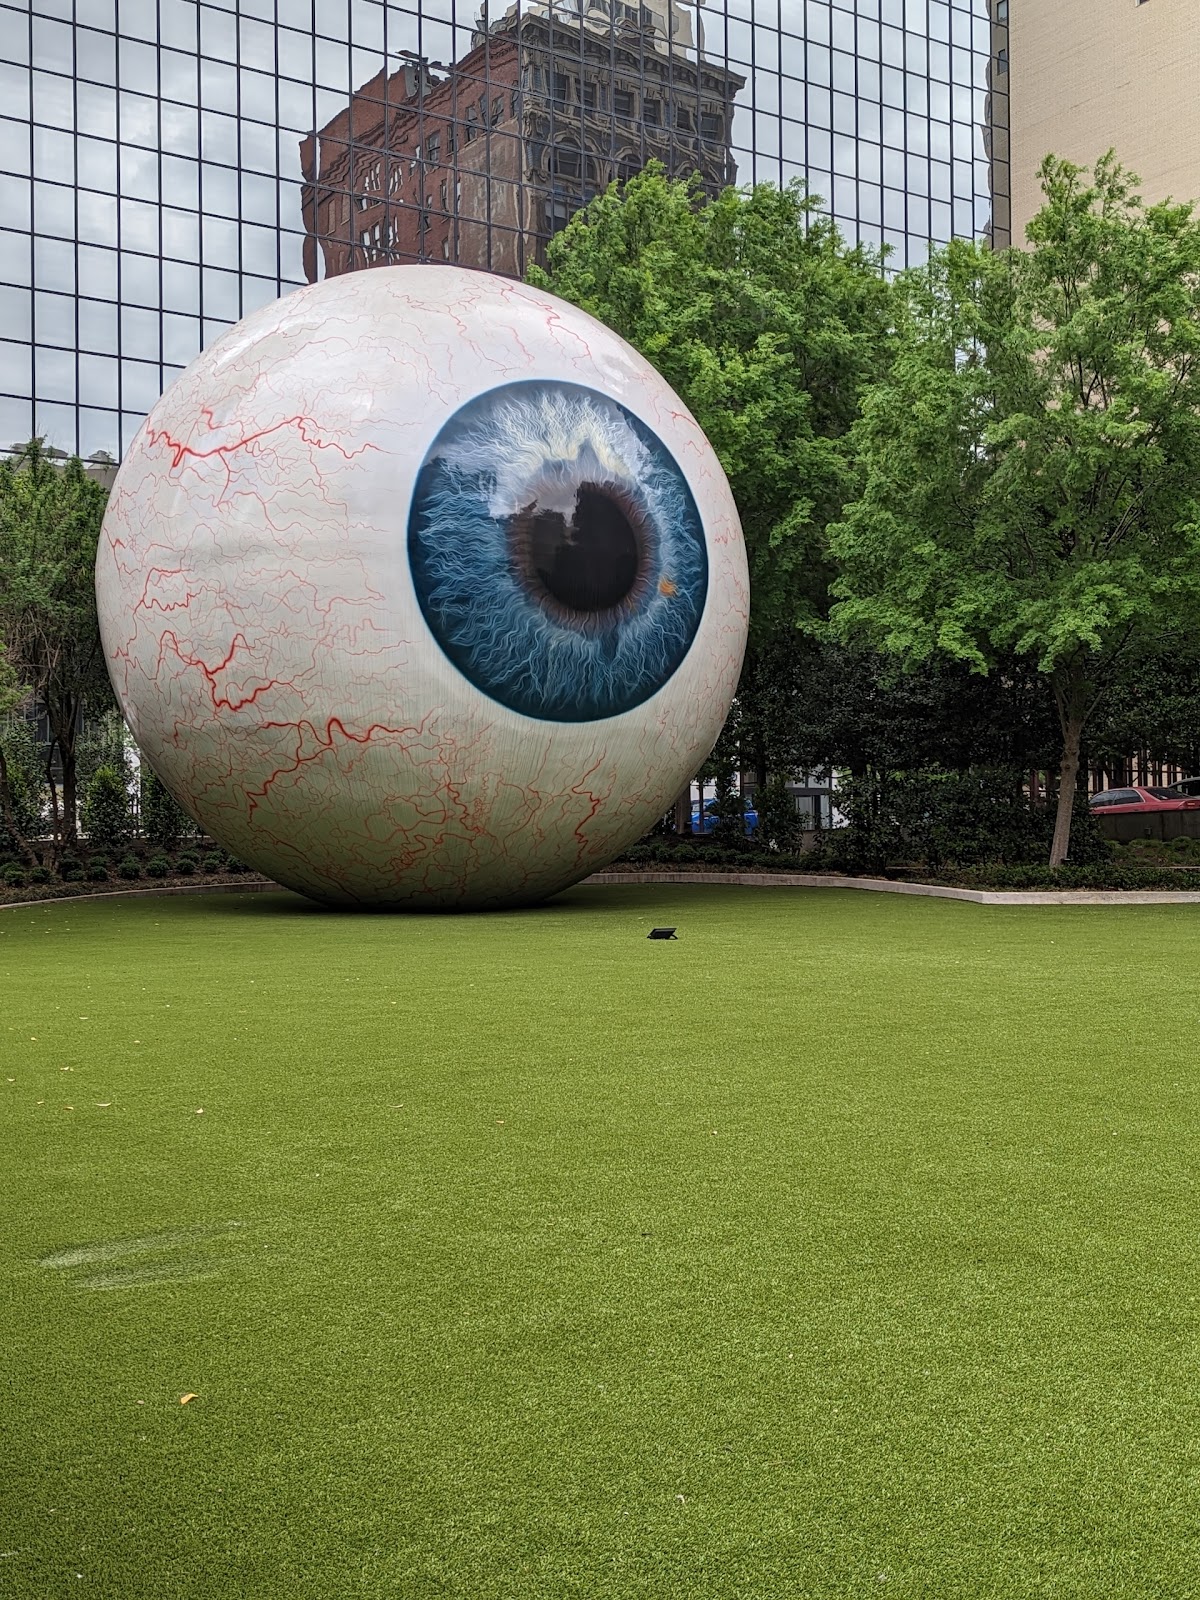 Giant Eyeball